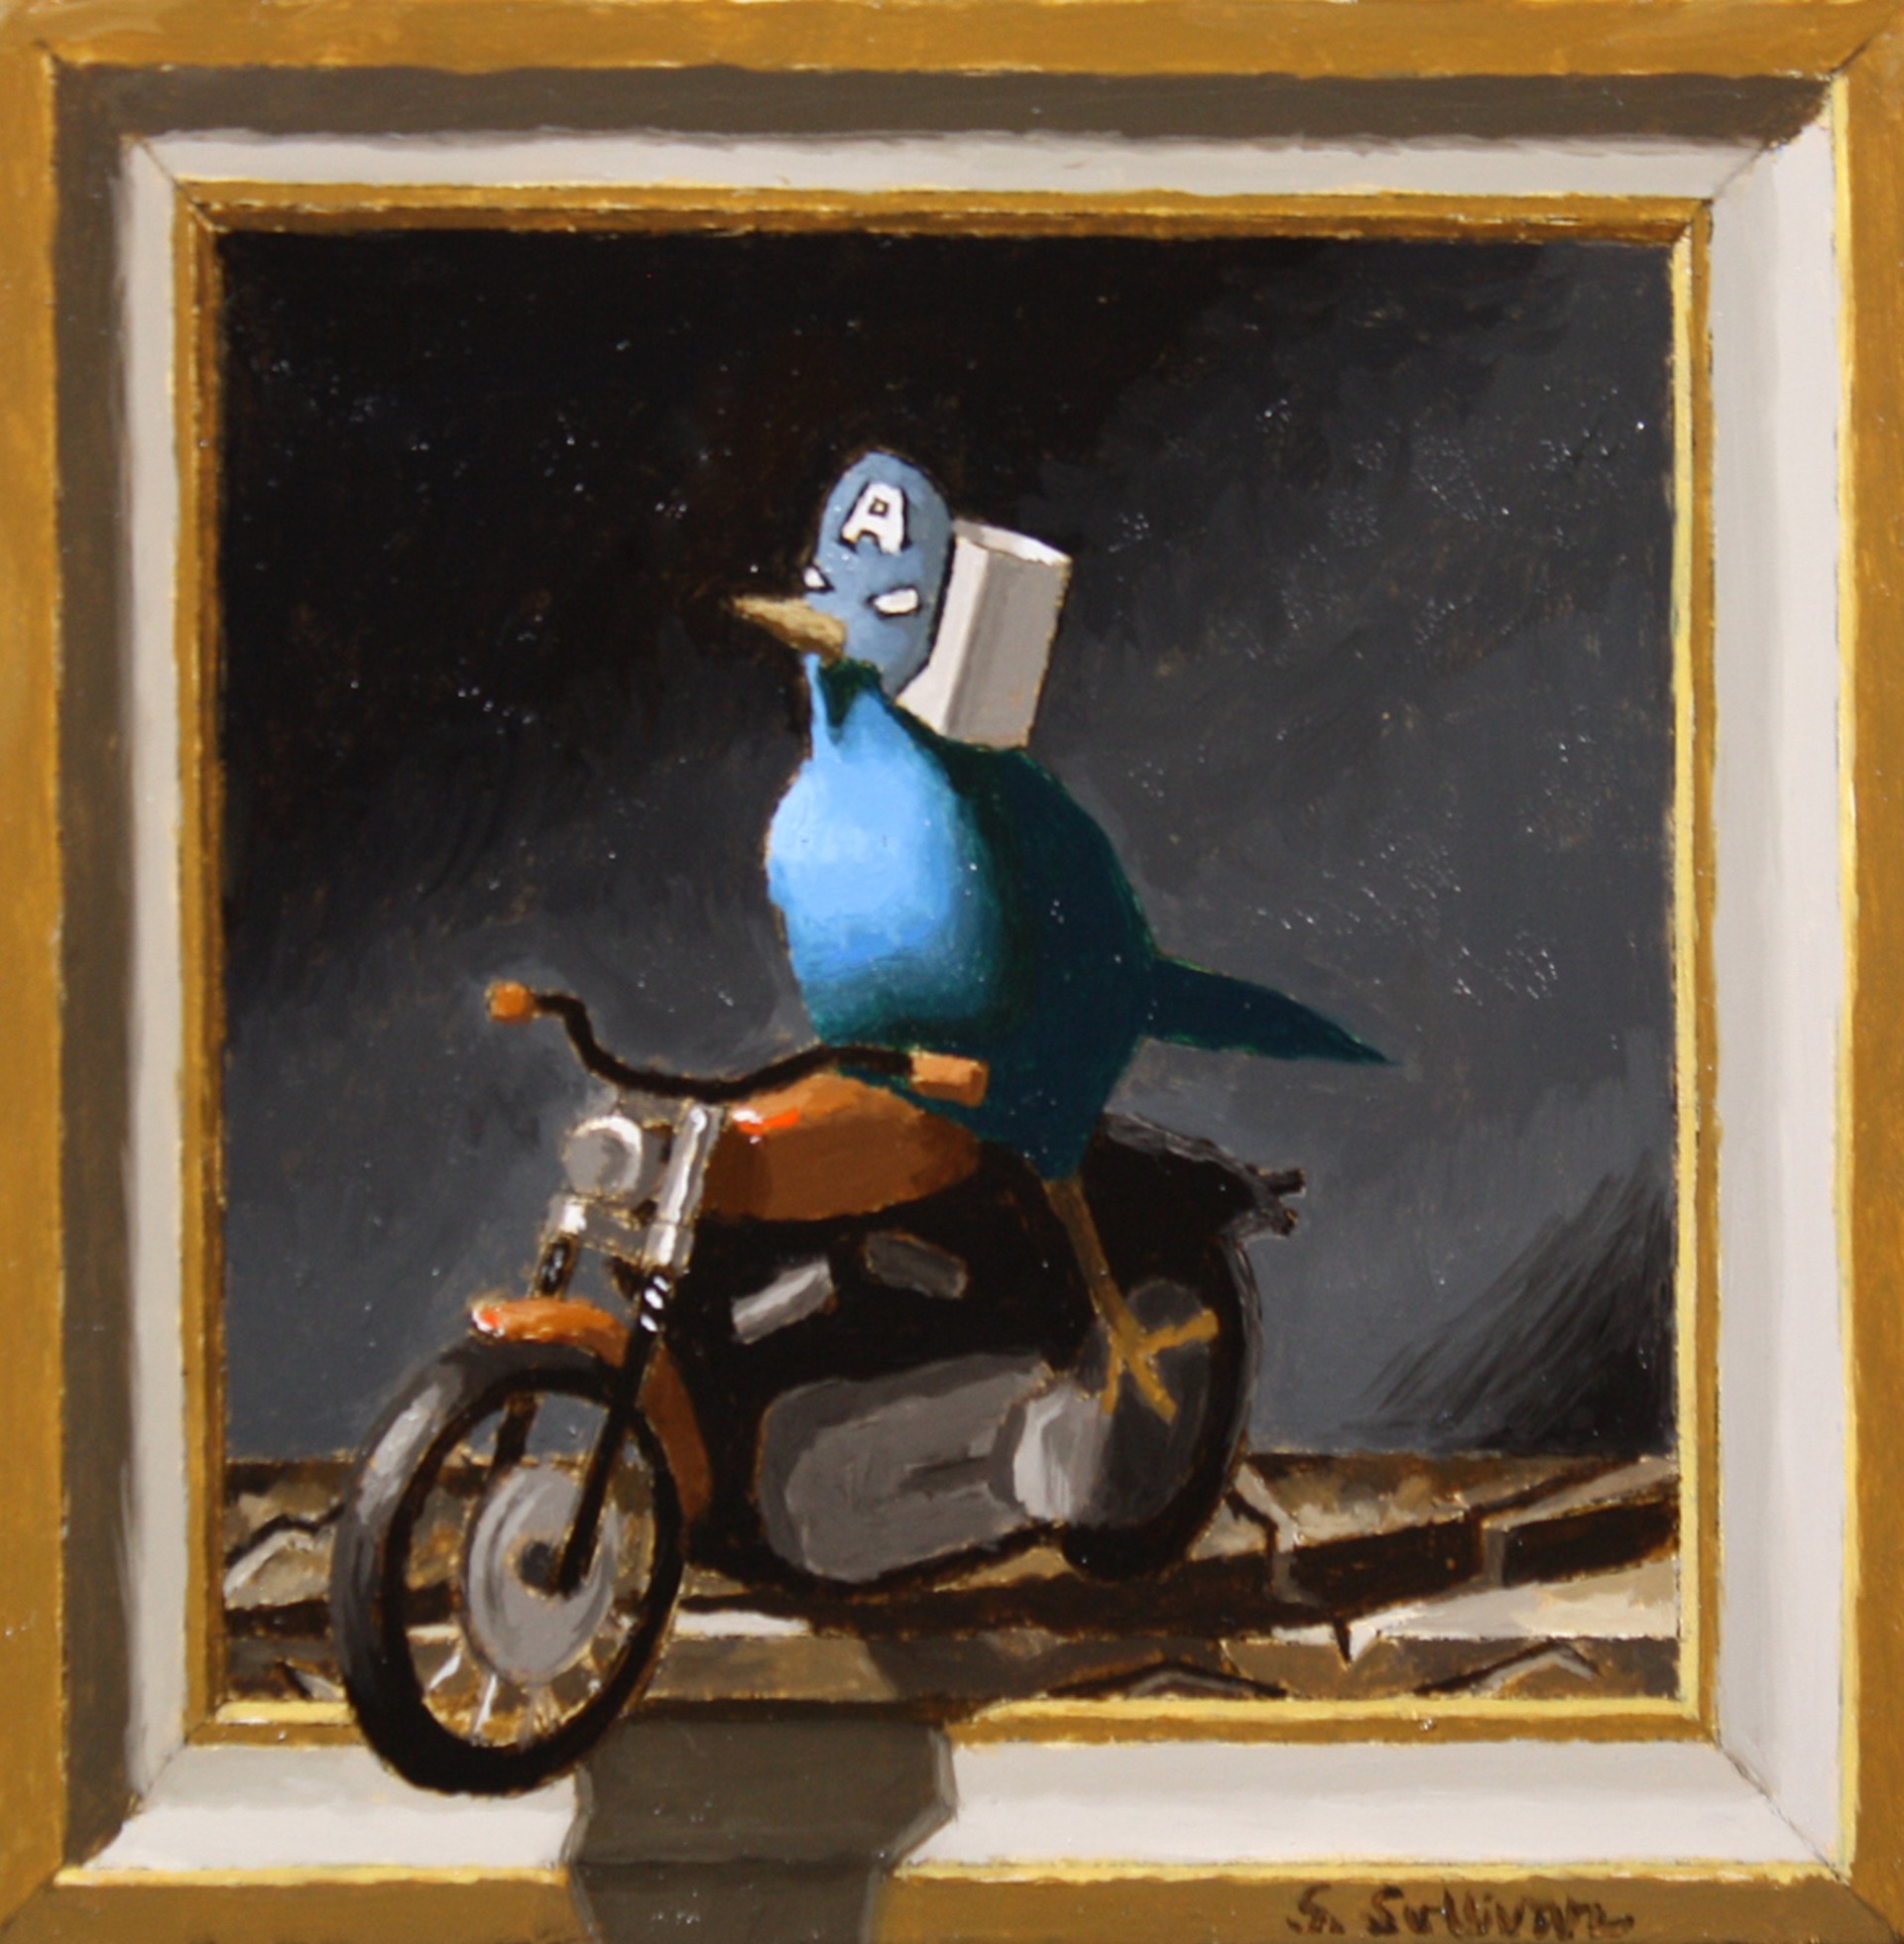 Blue Rider by Shawn Sullivan